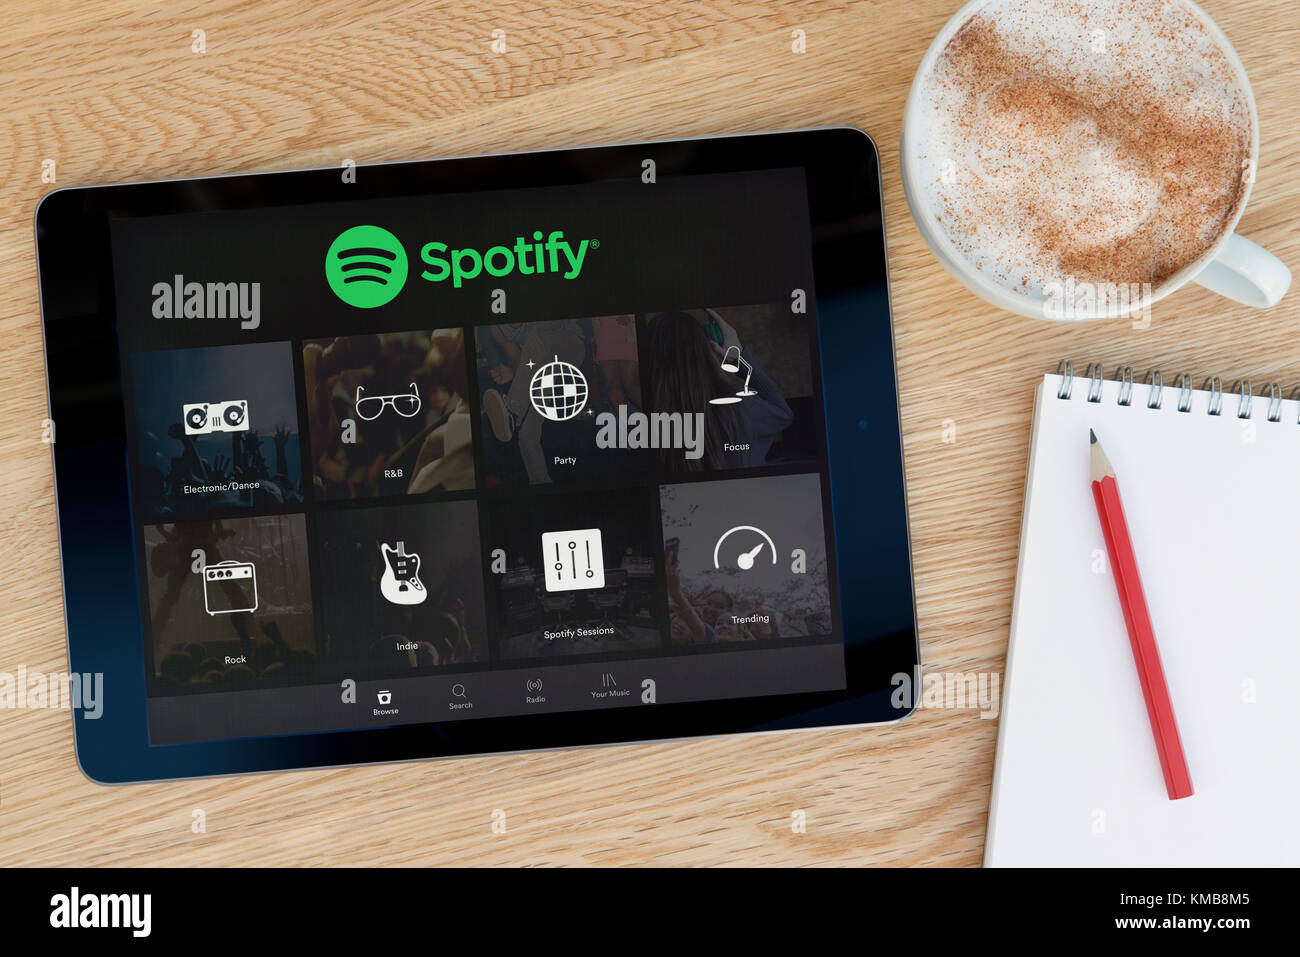 L'application Spotify dispose sur un iPad tablet device qui repose sur une table en bois à côté d'un bloc-notes et un crayon et une tasse de café (rédaction uniquement) Banque D'Images